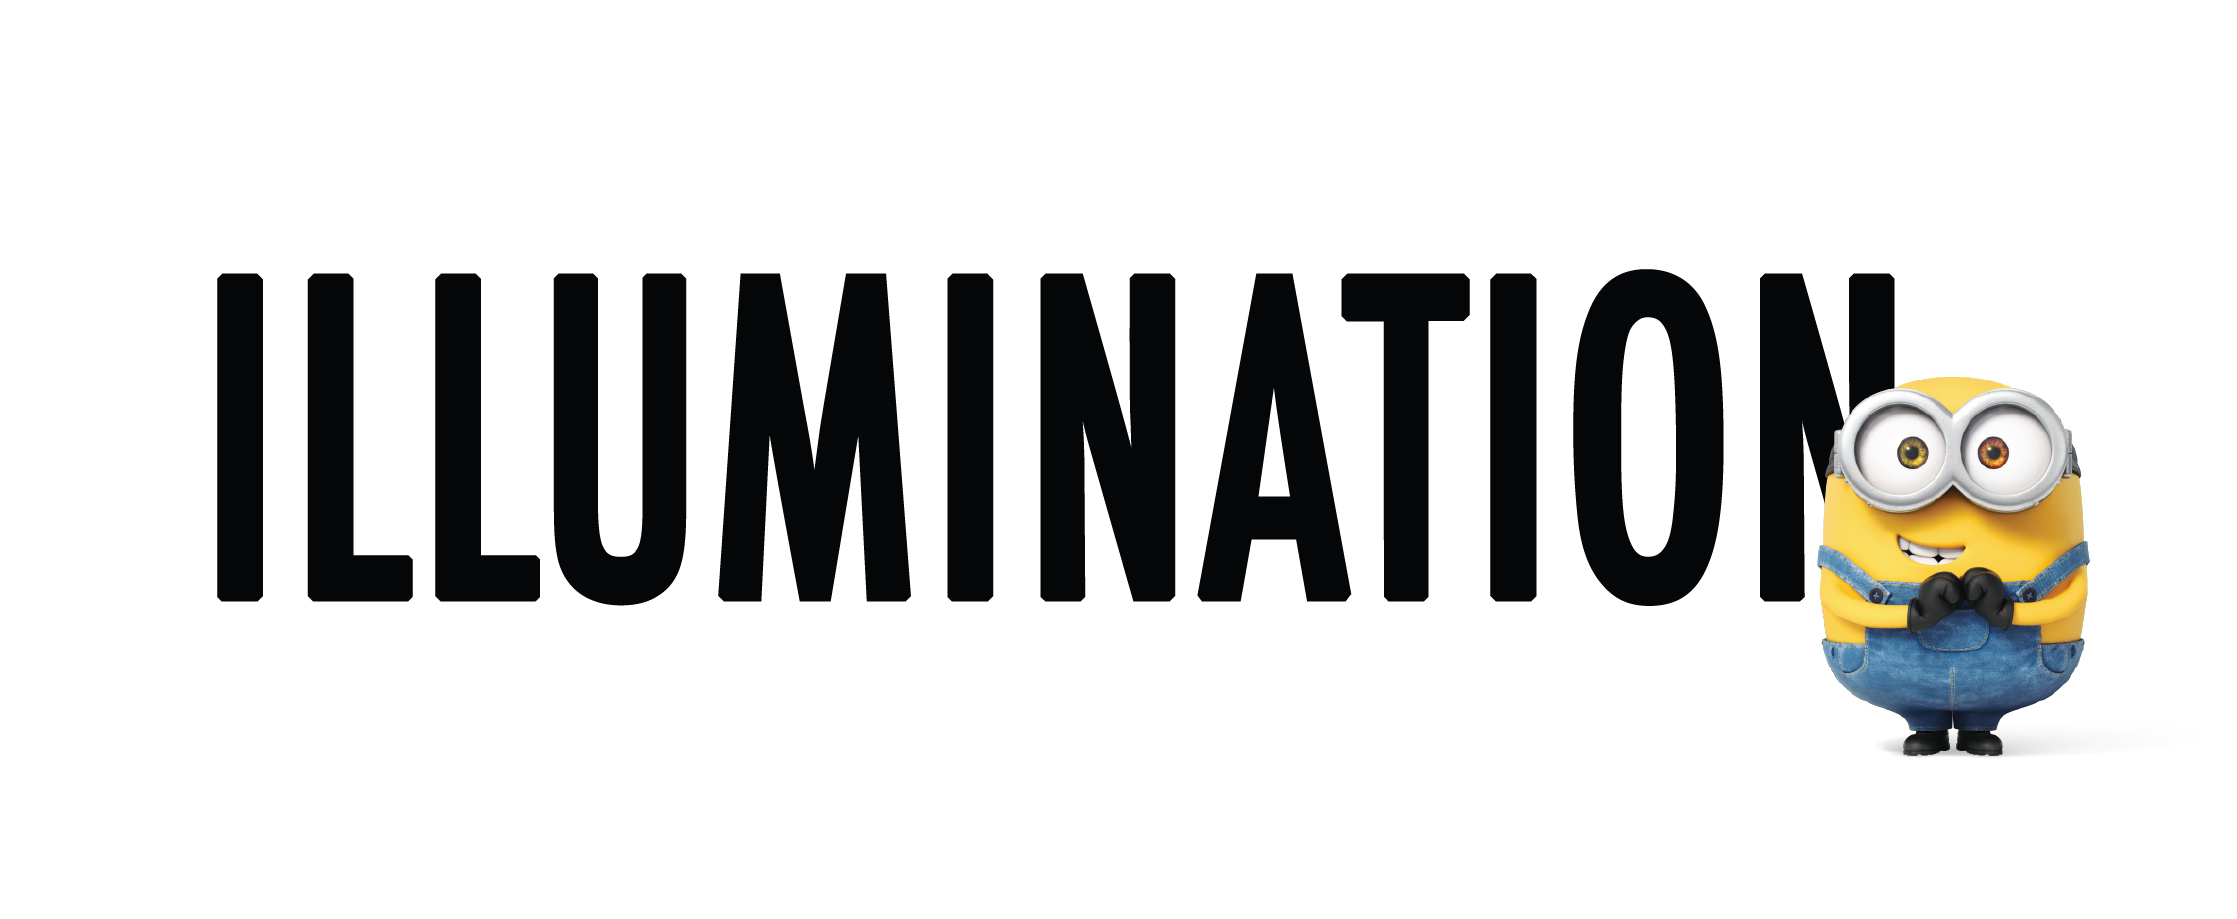 Illumination Entertainment Logo